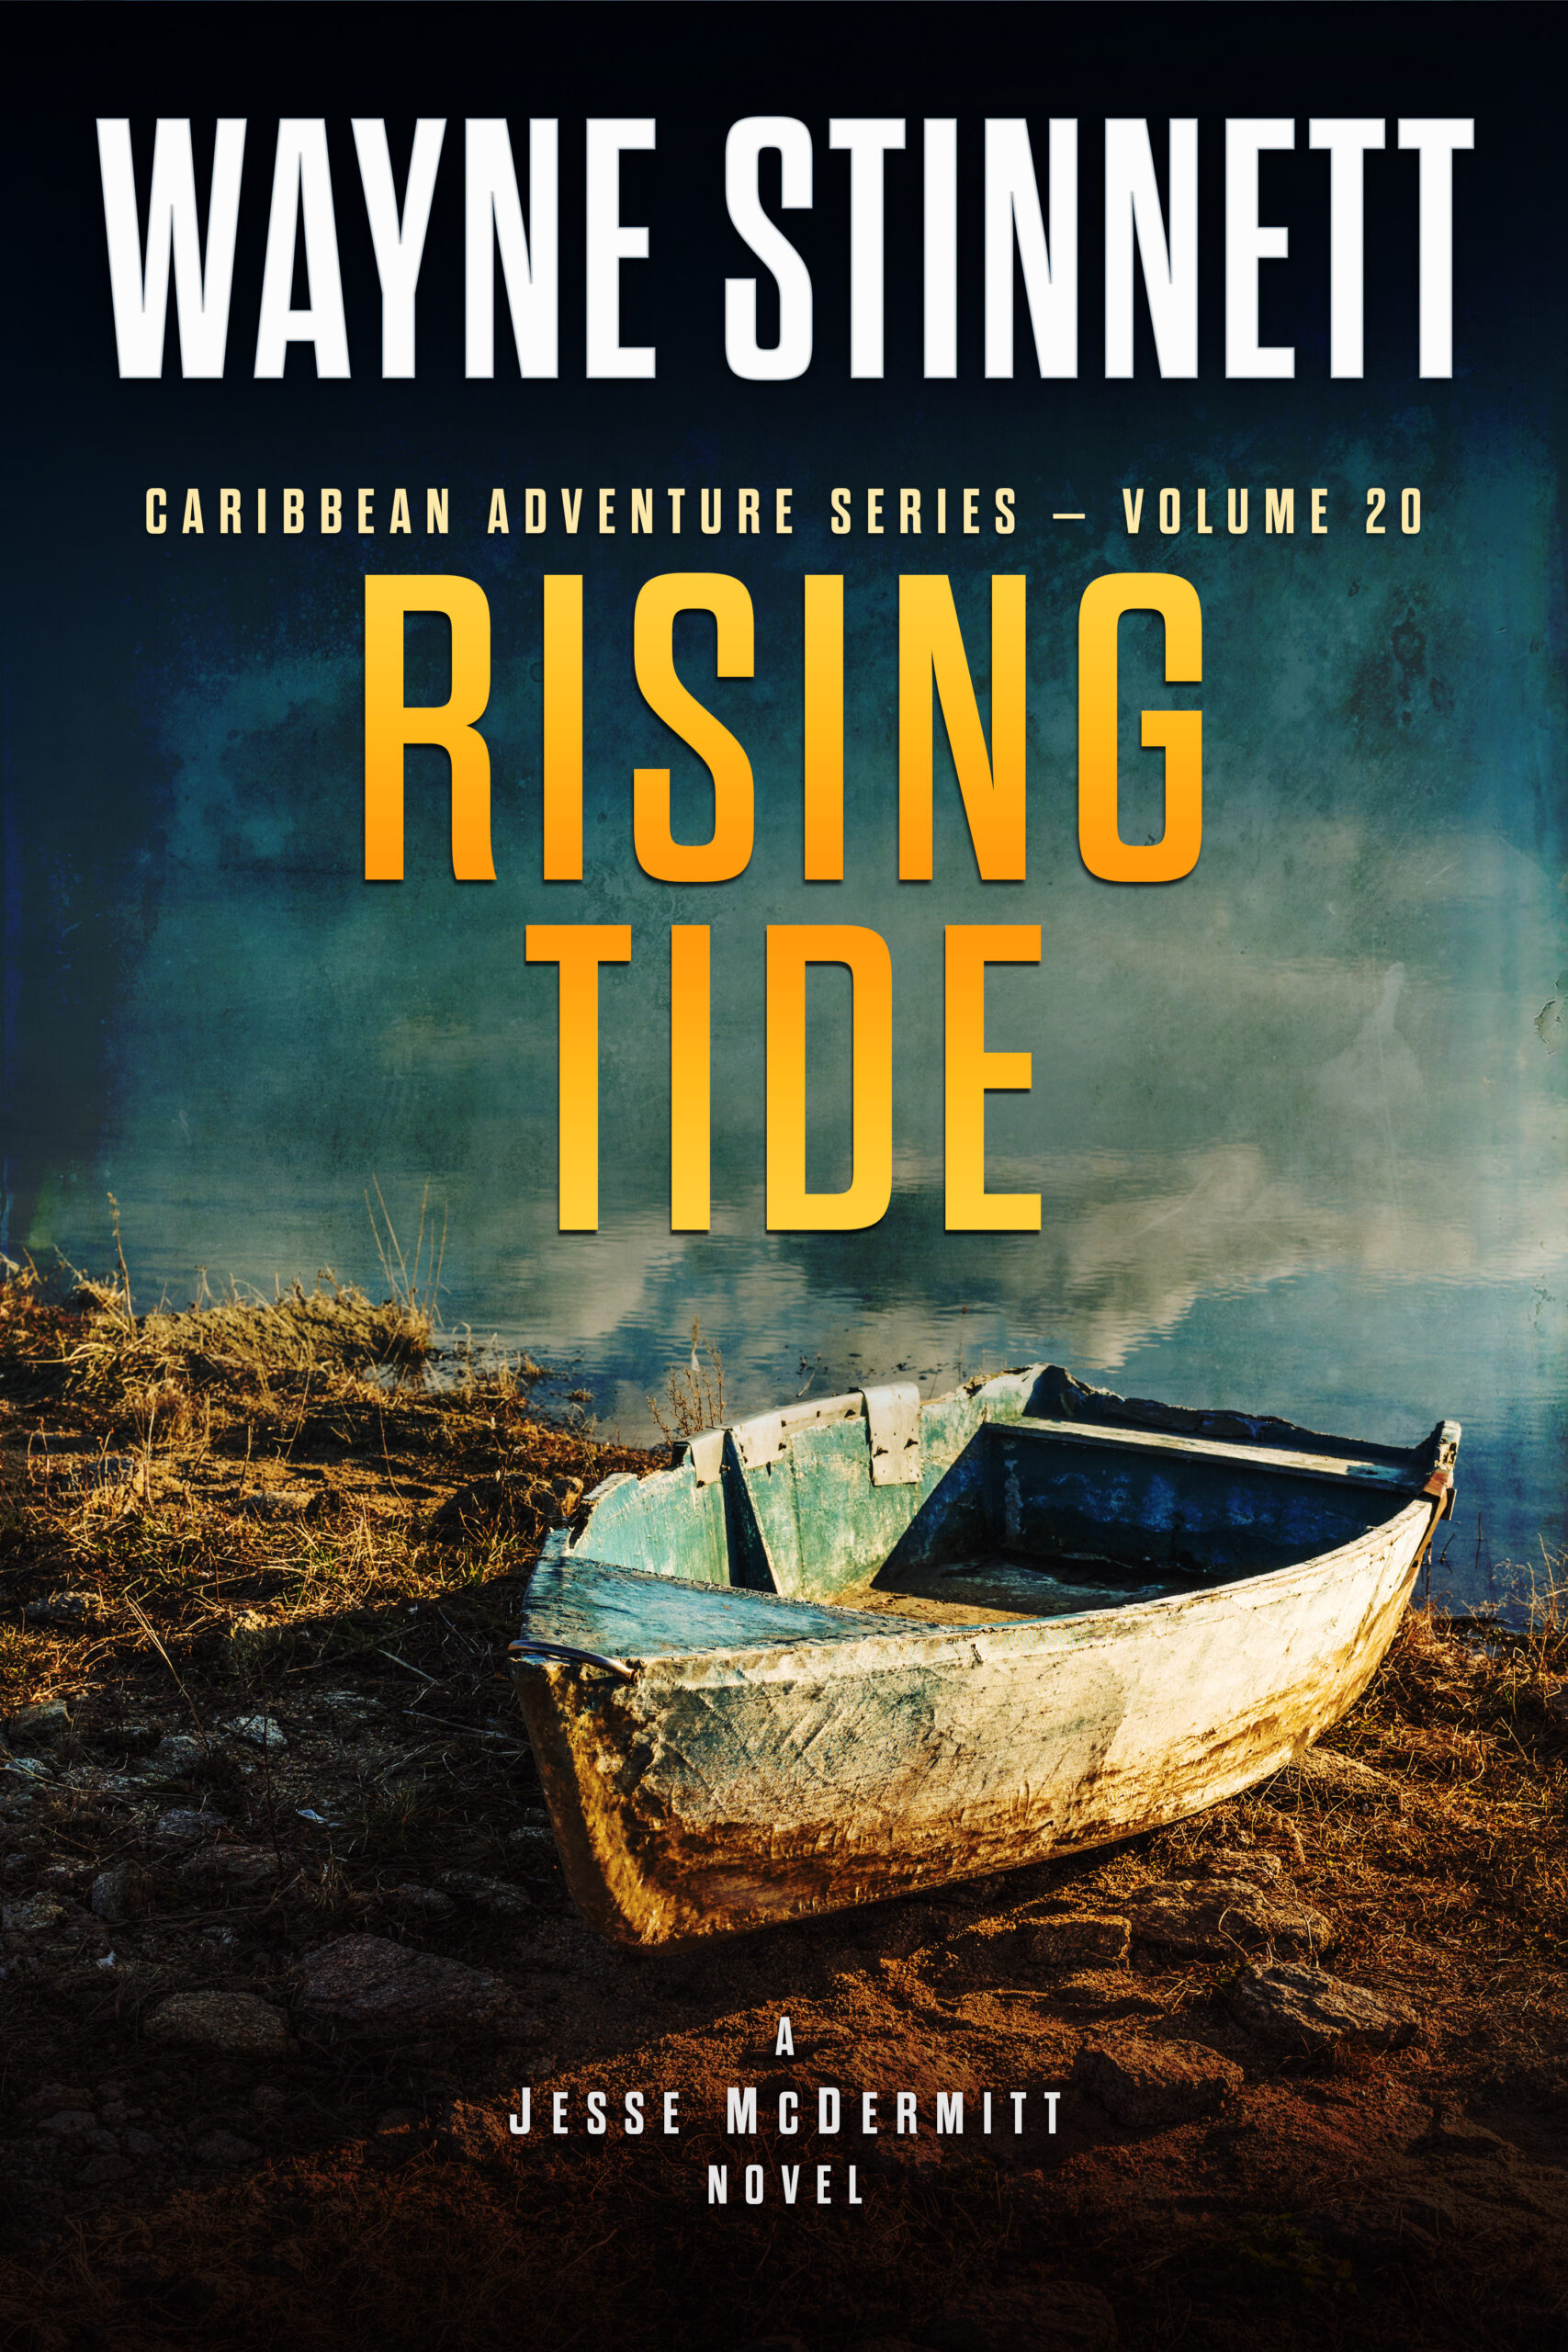 Book Cover of Rising Tide by Wayne Stinnett